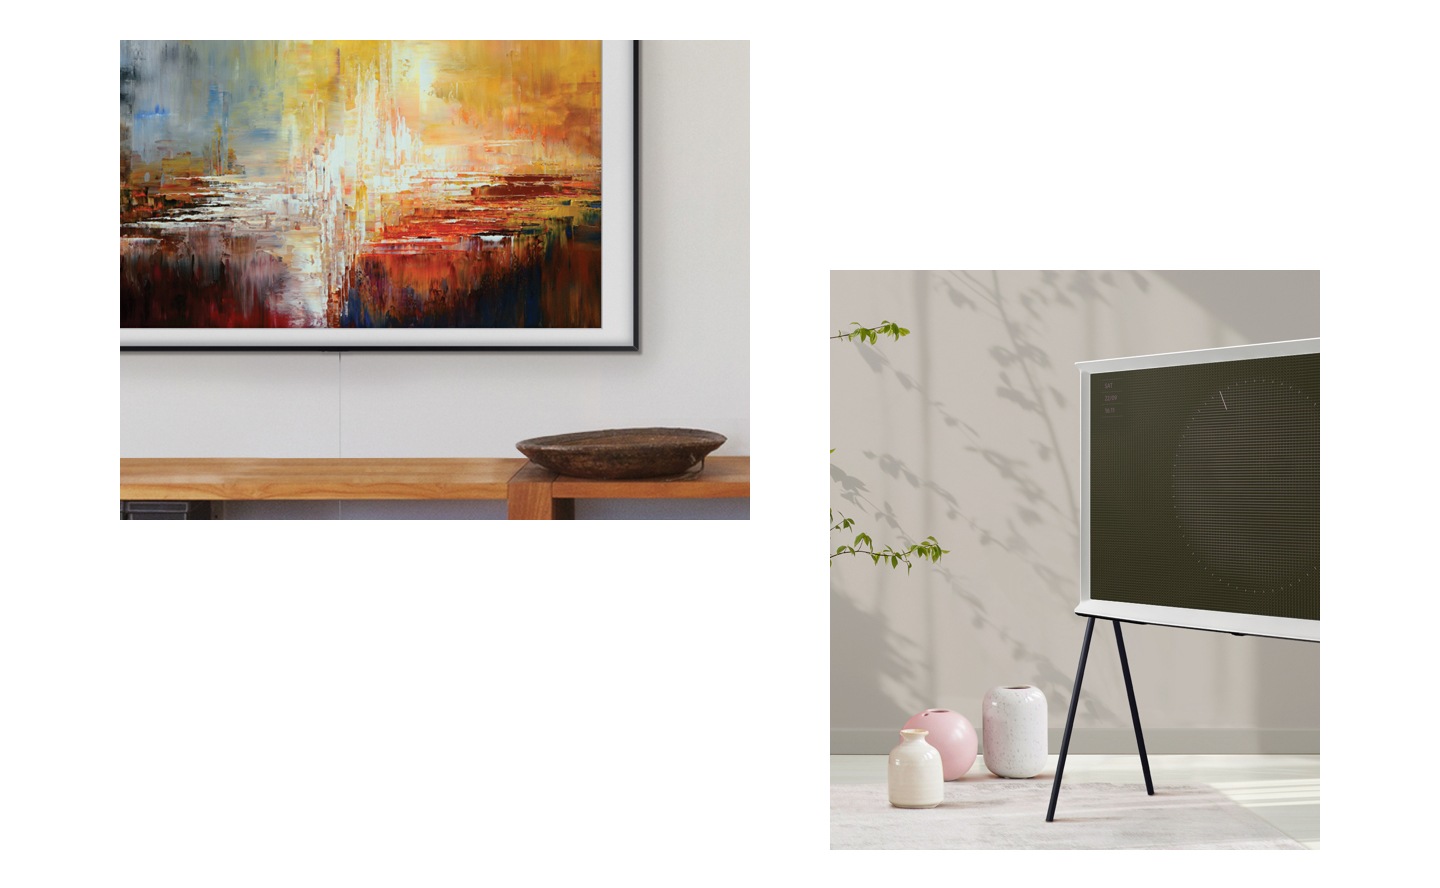 El televisor con bisel personalizado The Frame de Samsung exhibe obras de artes con una tienda, y está instalado usando montaje en pared sin espacio. El nuevo televisor Serif TV 2019 se encuentra con el modo ambiente, una de sus nuevas funciones, en una sala con muebles modernos.